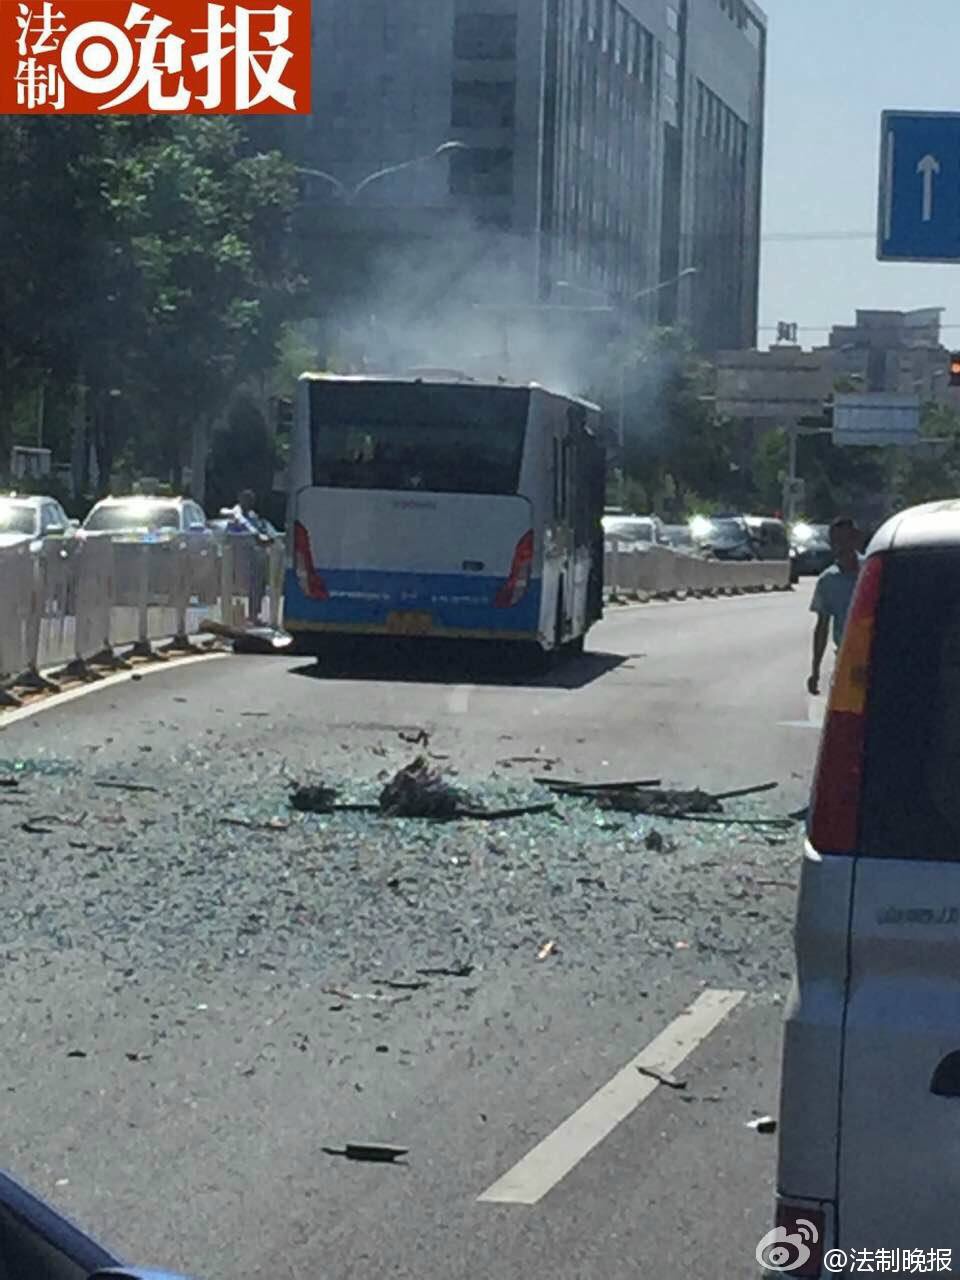 北京小营北路569公交车突然爆炸